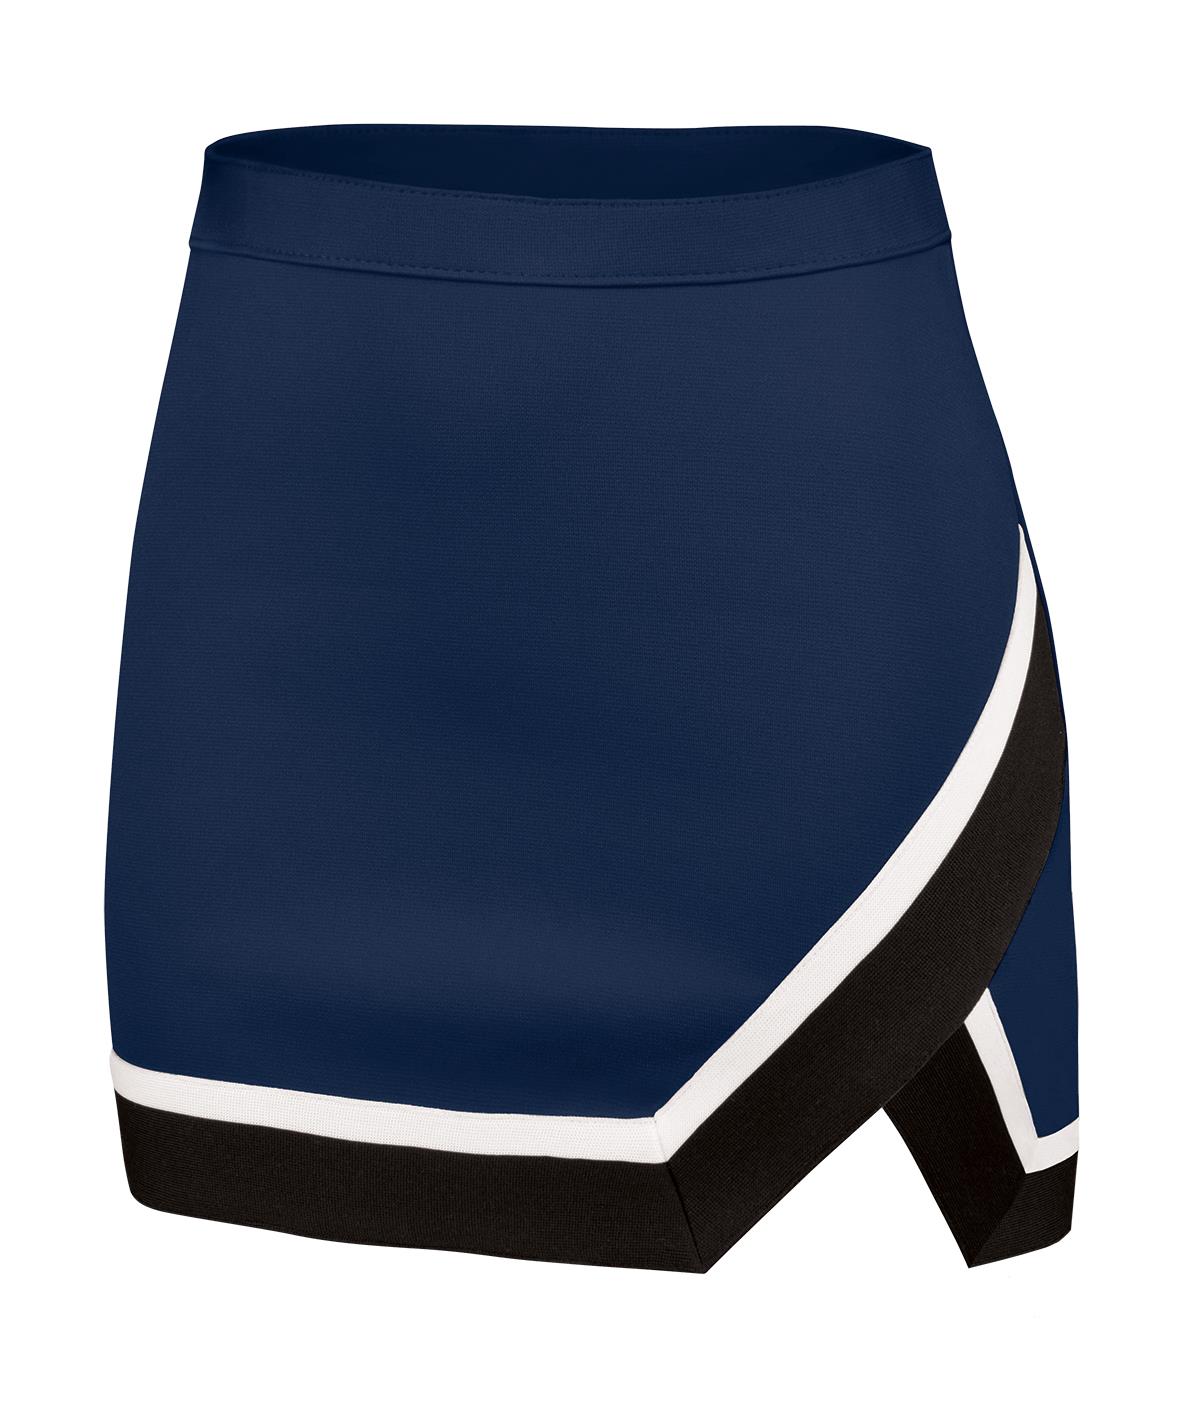 Chasse Arena Skirt